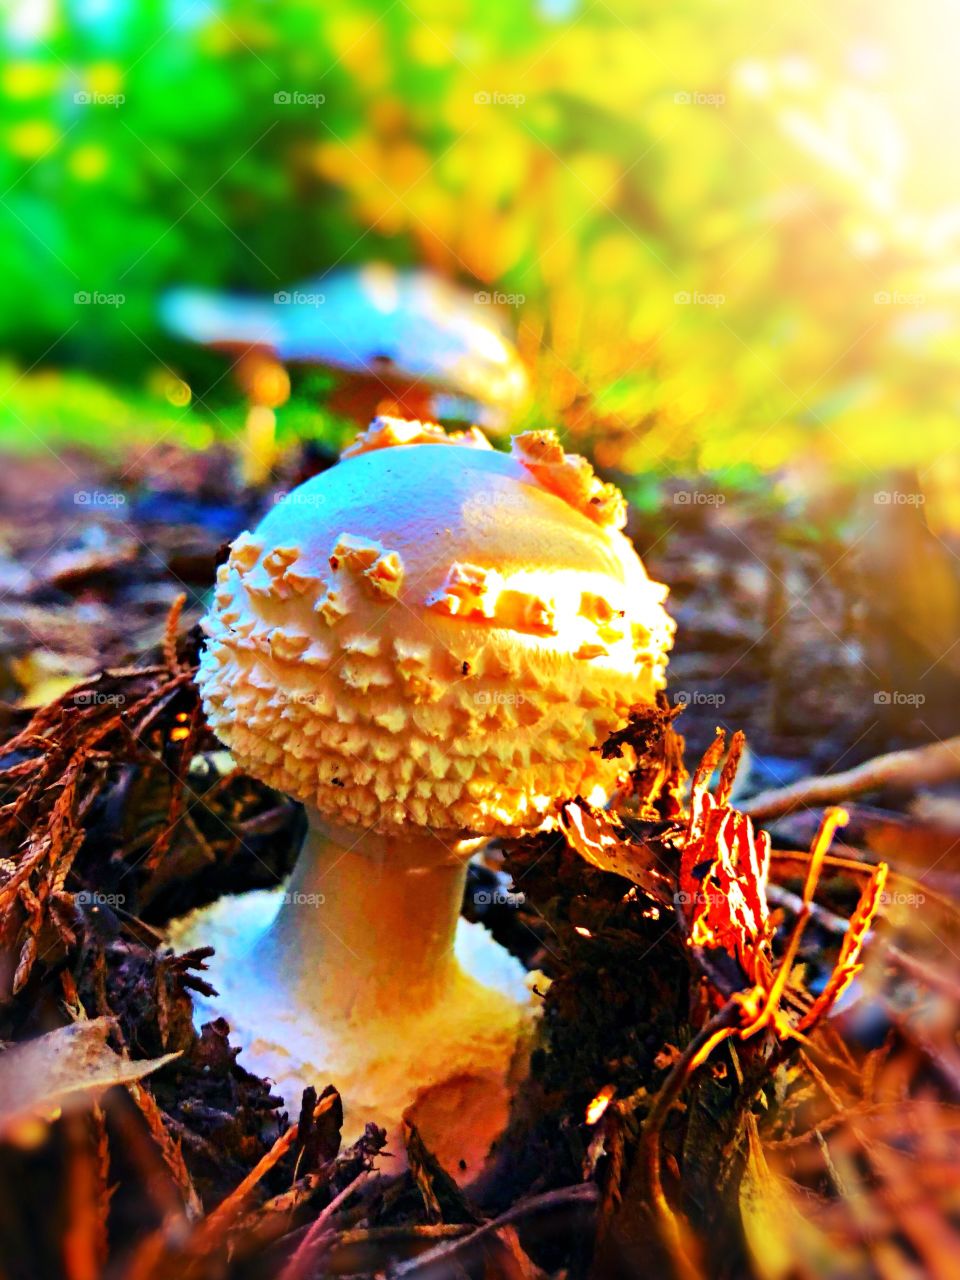 Sunset mushroom 